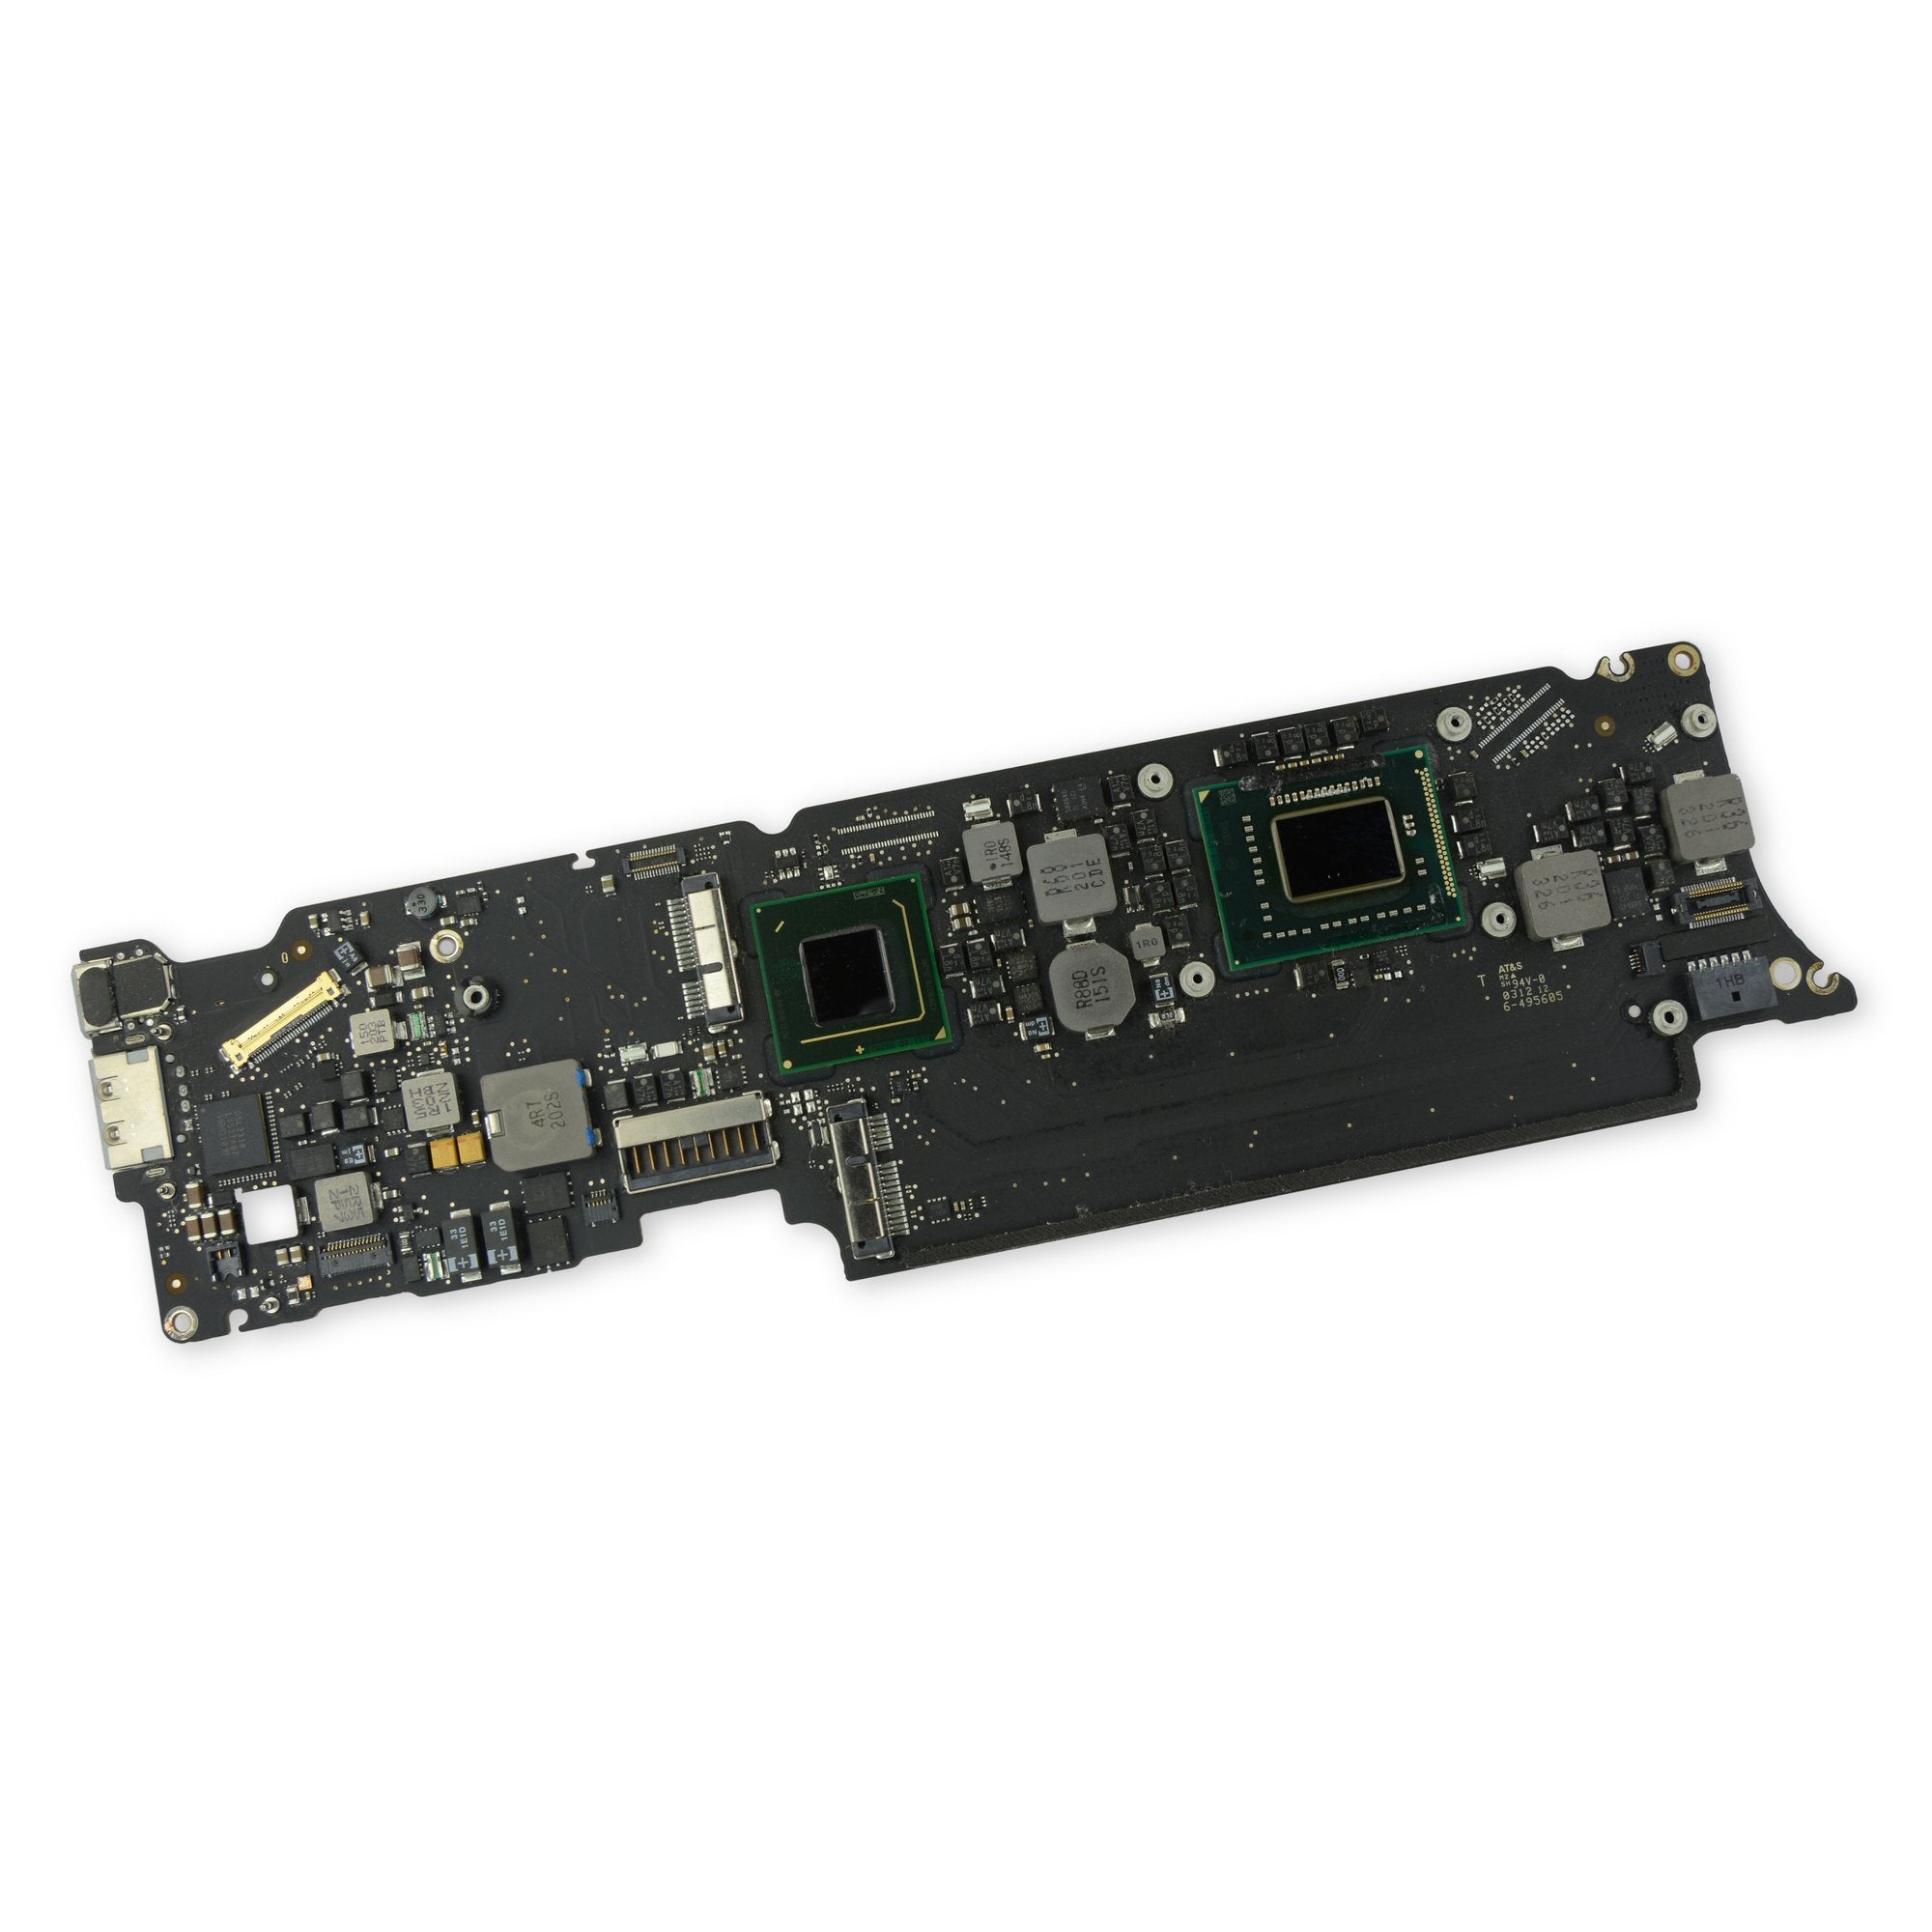 MacBook Air 11" (Mid 2011) 1.8 GHz Logic Board